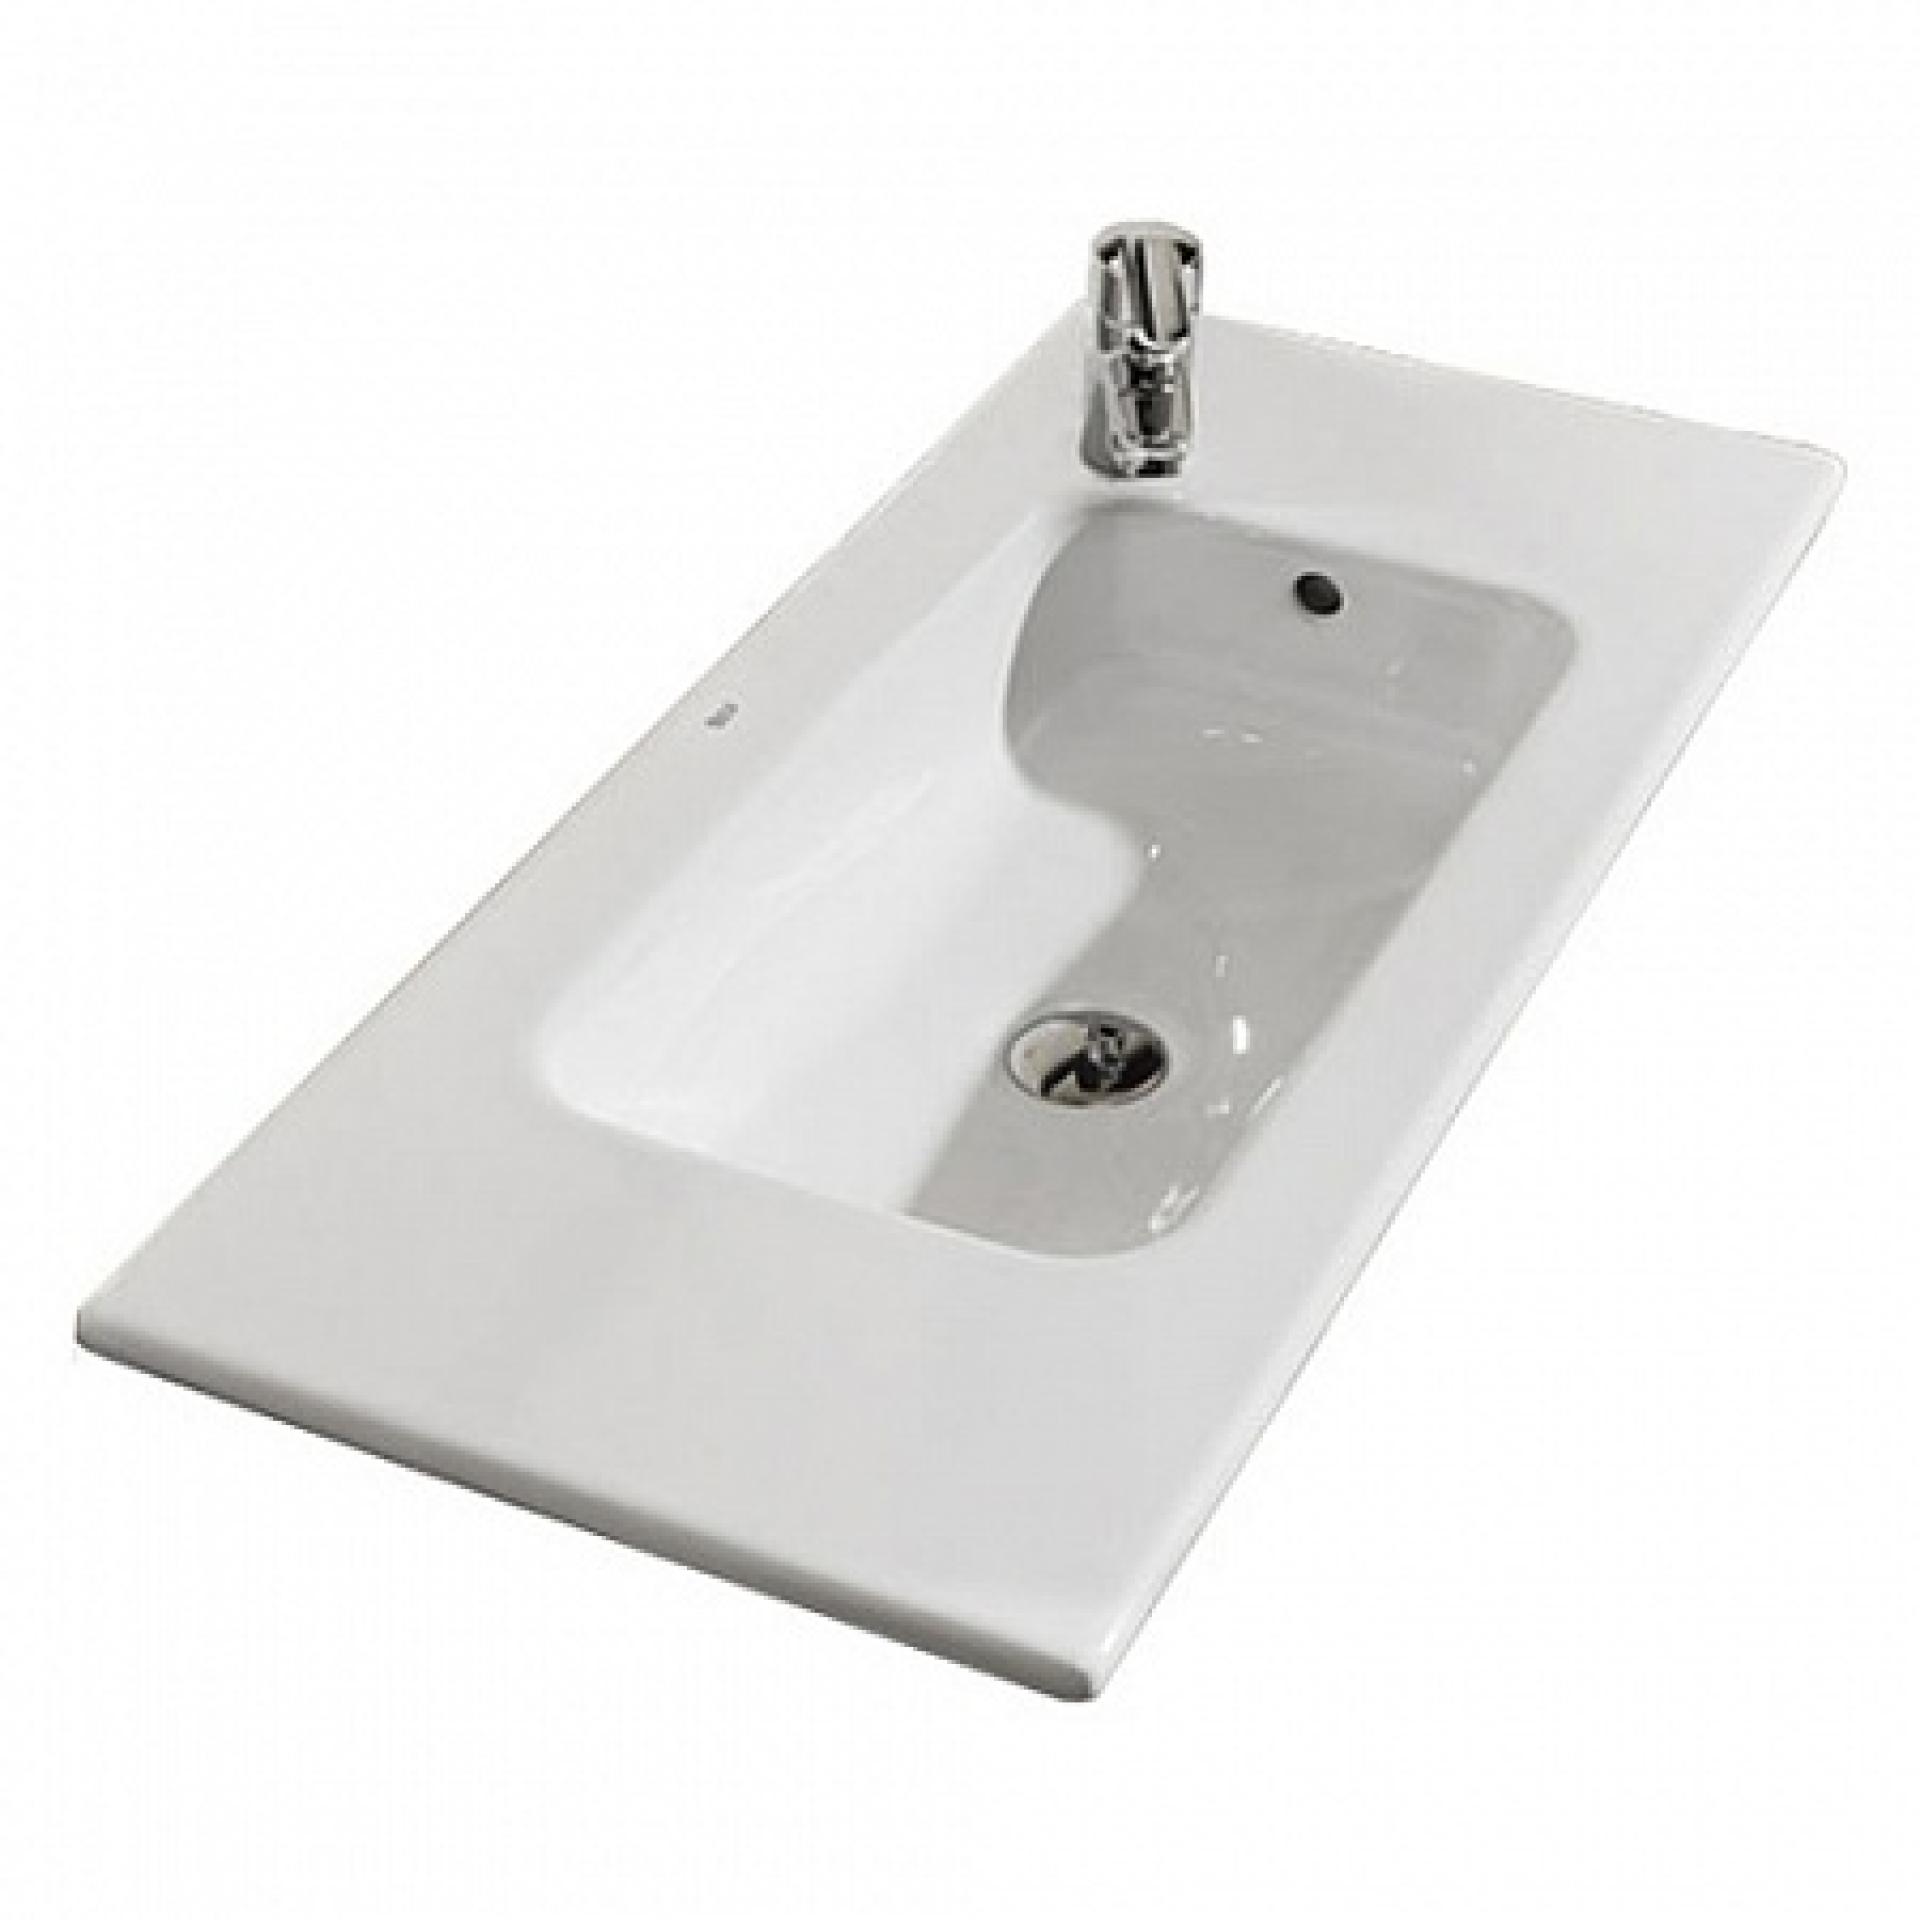 Фото: Комплект мебели для ванной Roca Debba 60 см Roca Debba белая (тумба+раковина+зеркало левое) Roca в каталоге